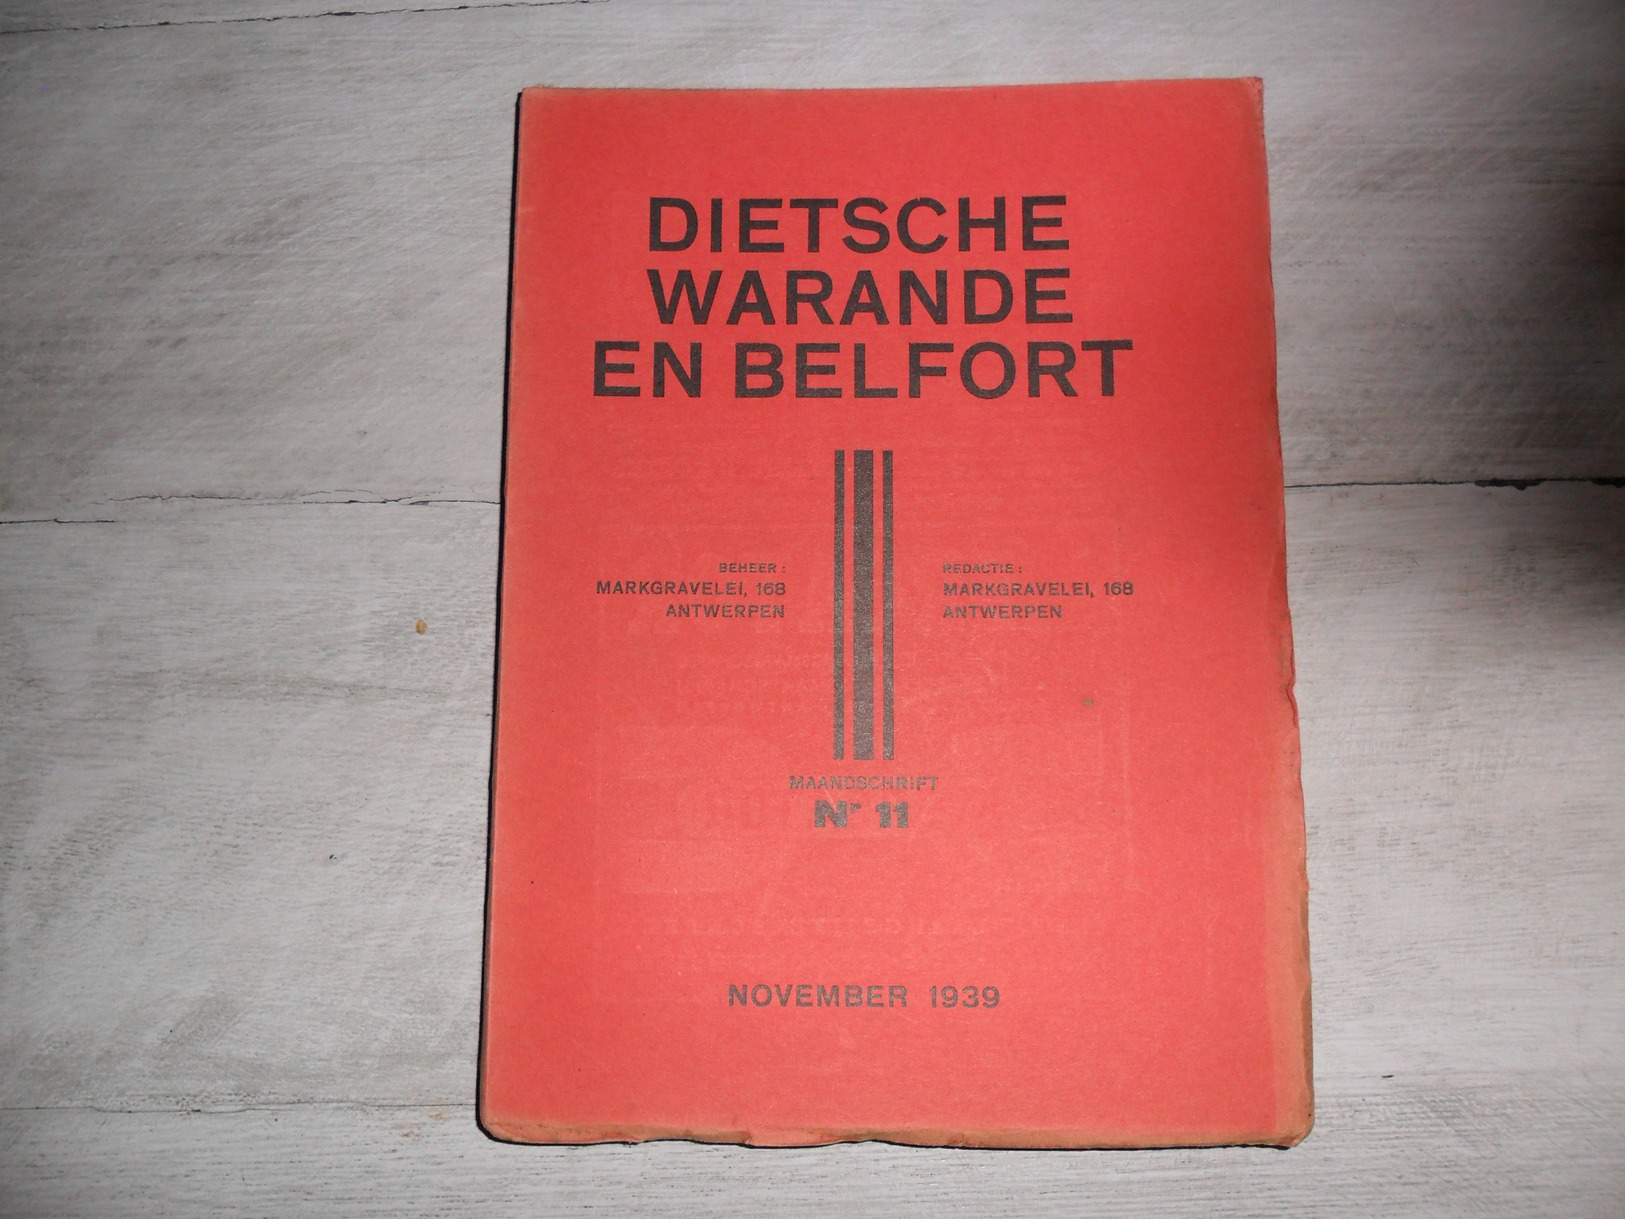 Dietsche Warande En Belfort - Maandschrift N° 11  November 1939  - Vlaamse Beweging  - Vlaams - Nationalisme  - - Geschiedenis